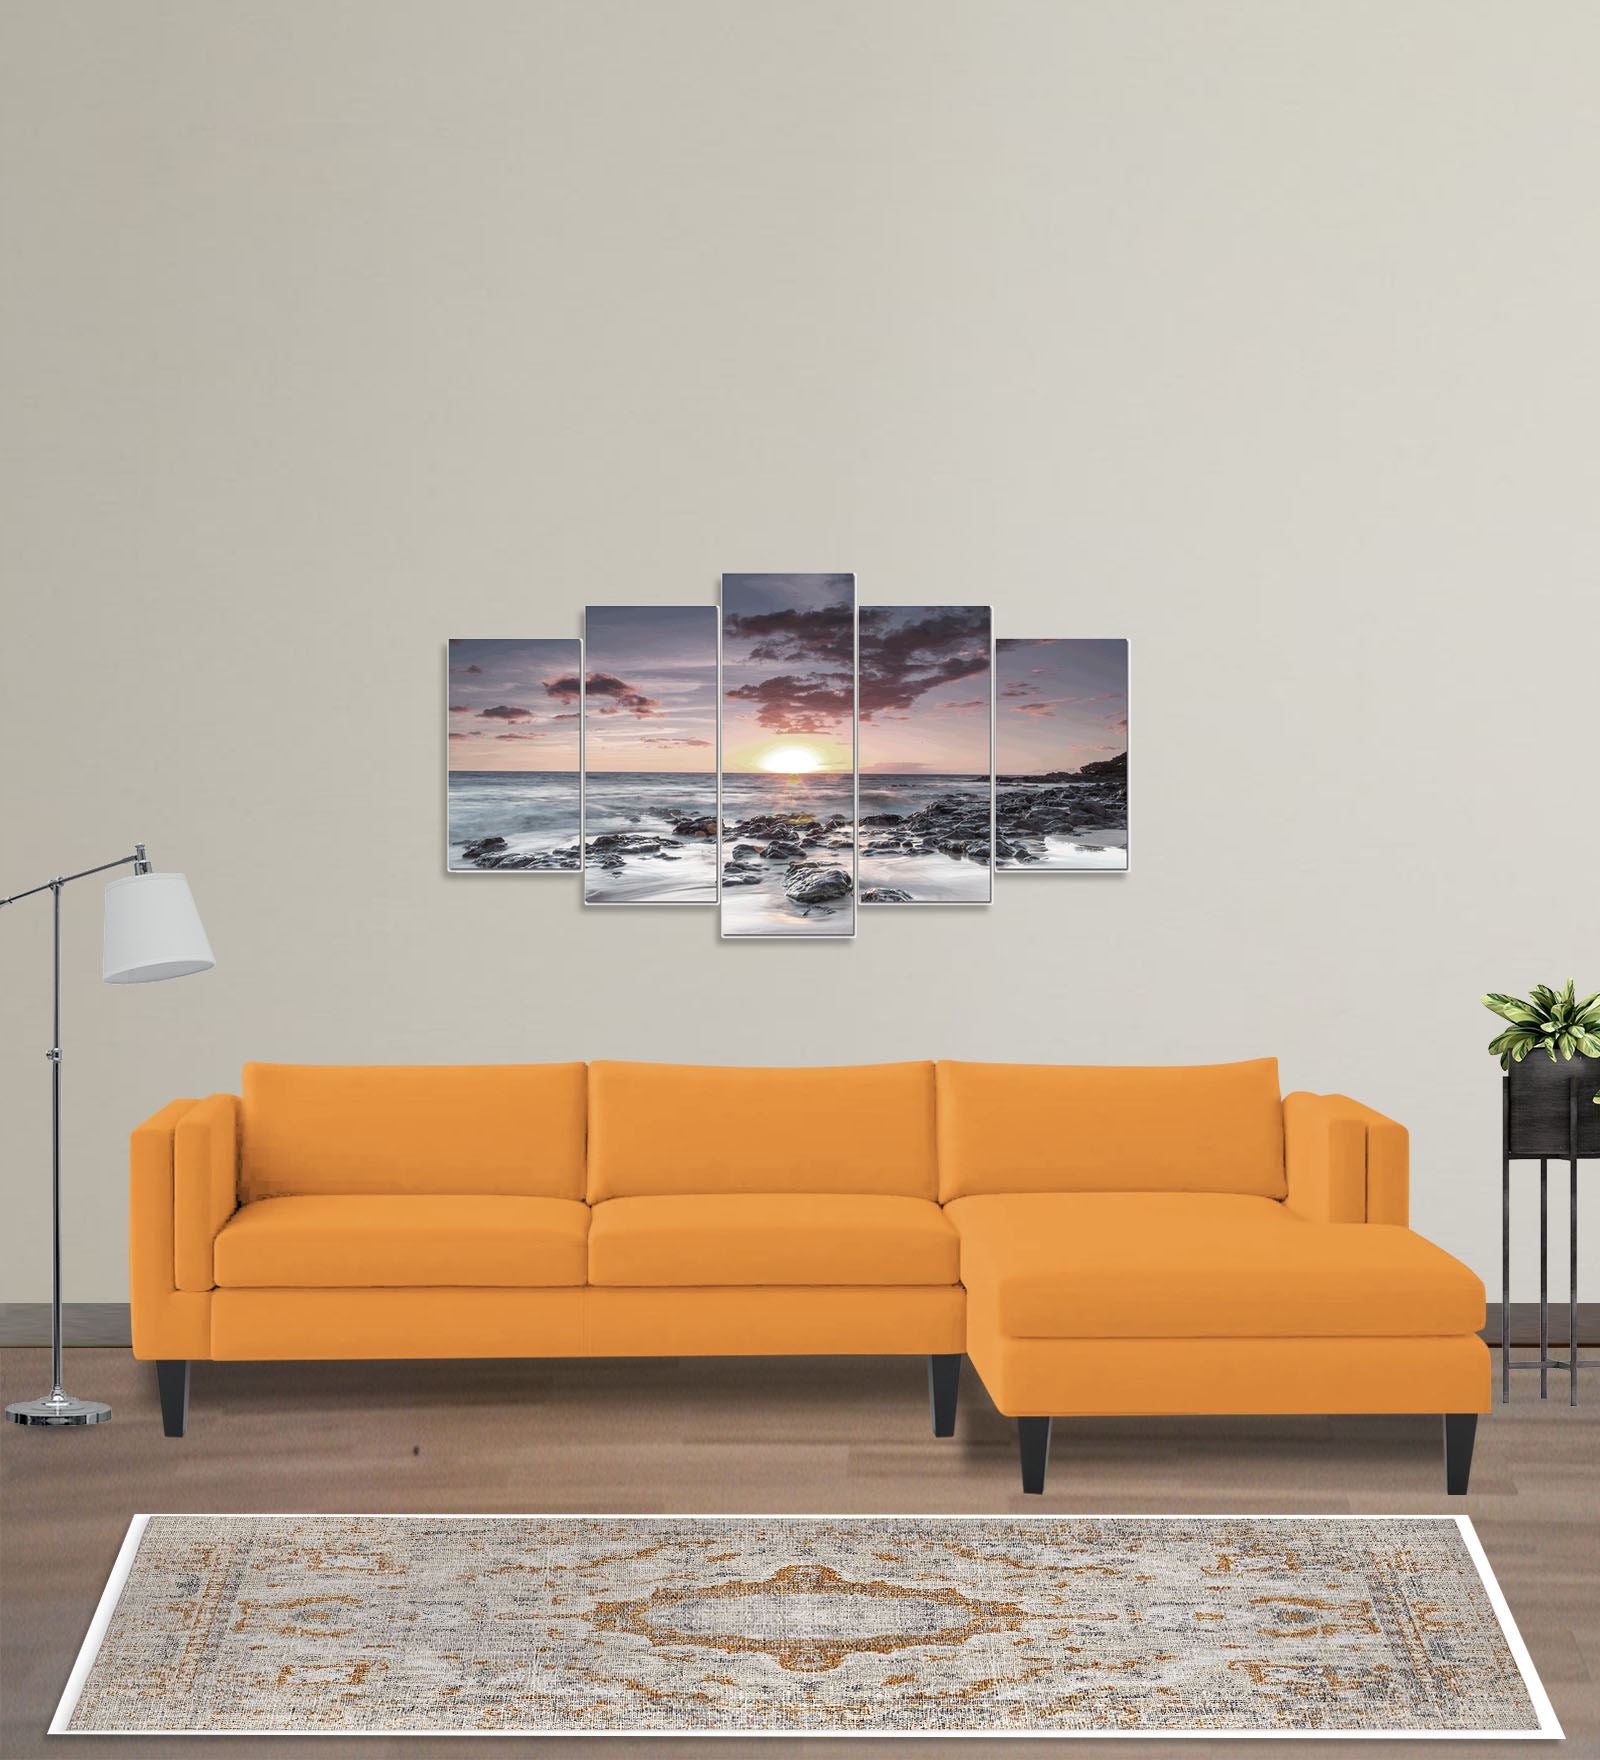 Jasper Velvet LHS Sectional Sofa (3+Lounger) in Tangerine orange Colour